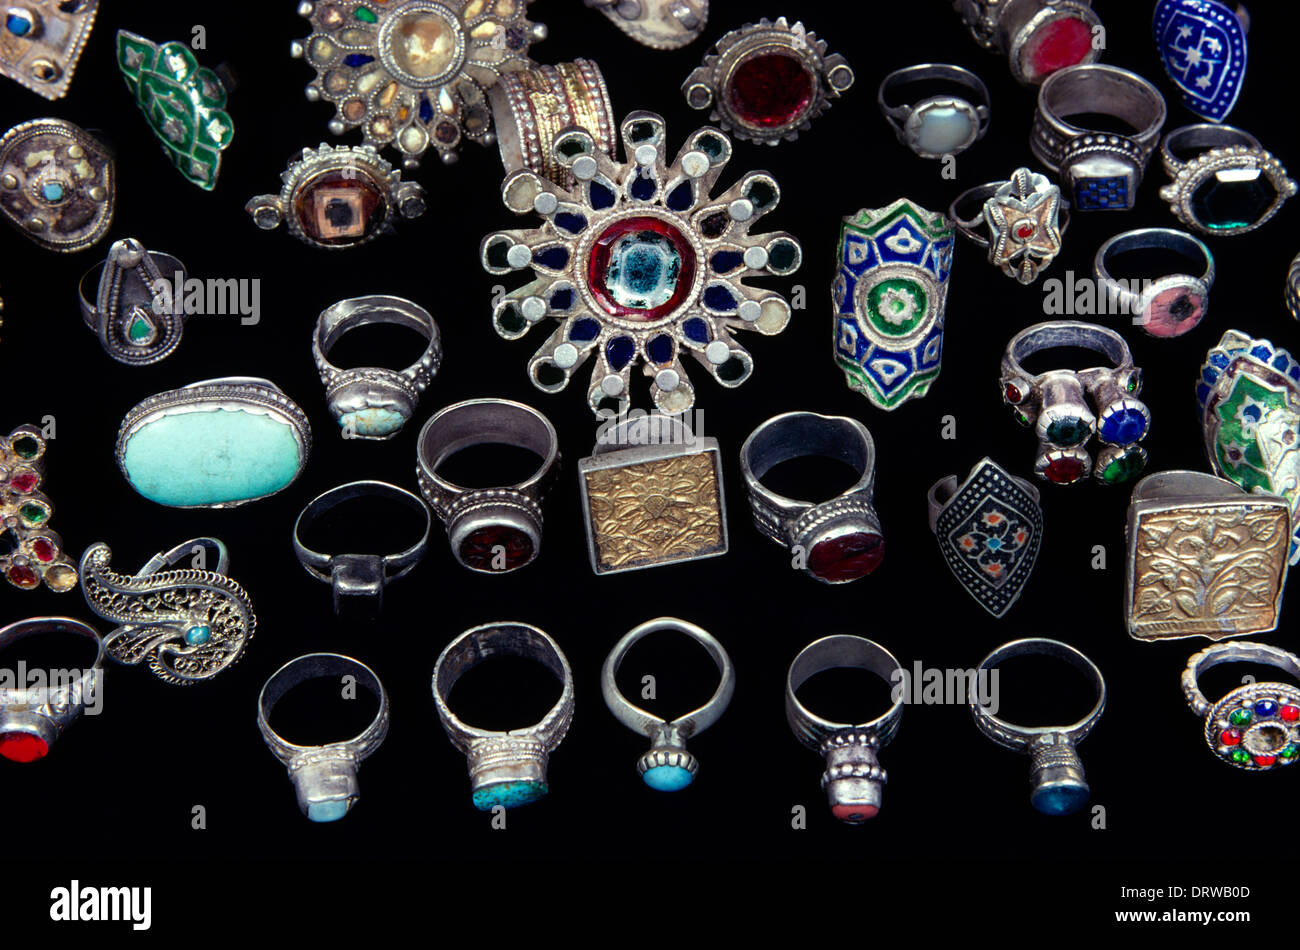 Early Bedouin Jewellery Stock Photo